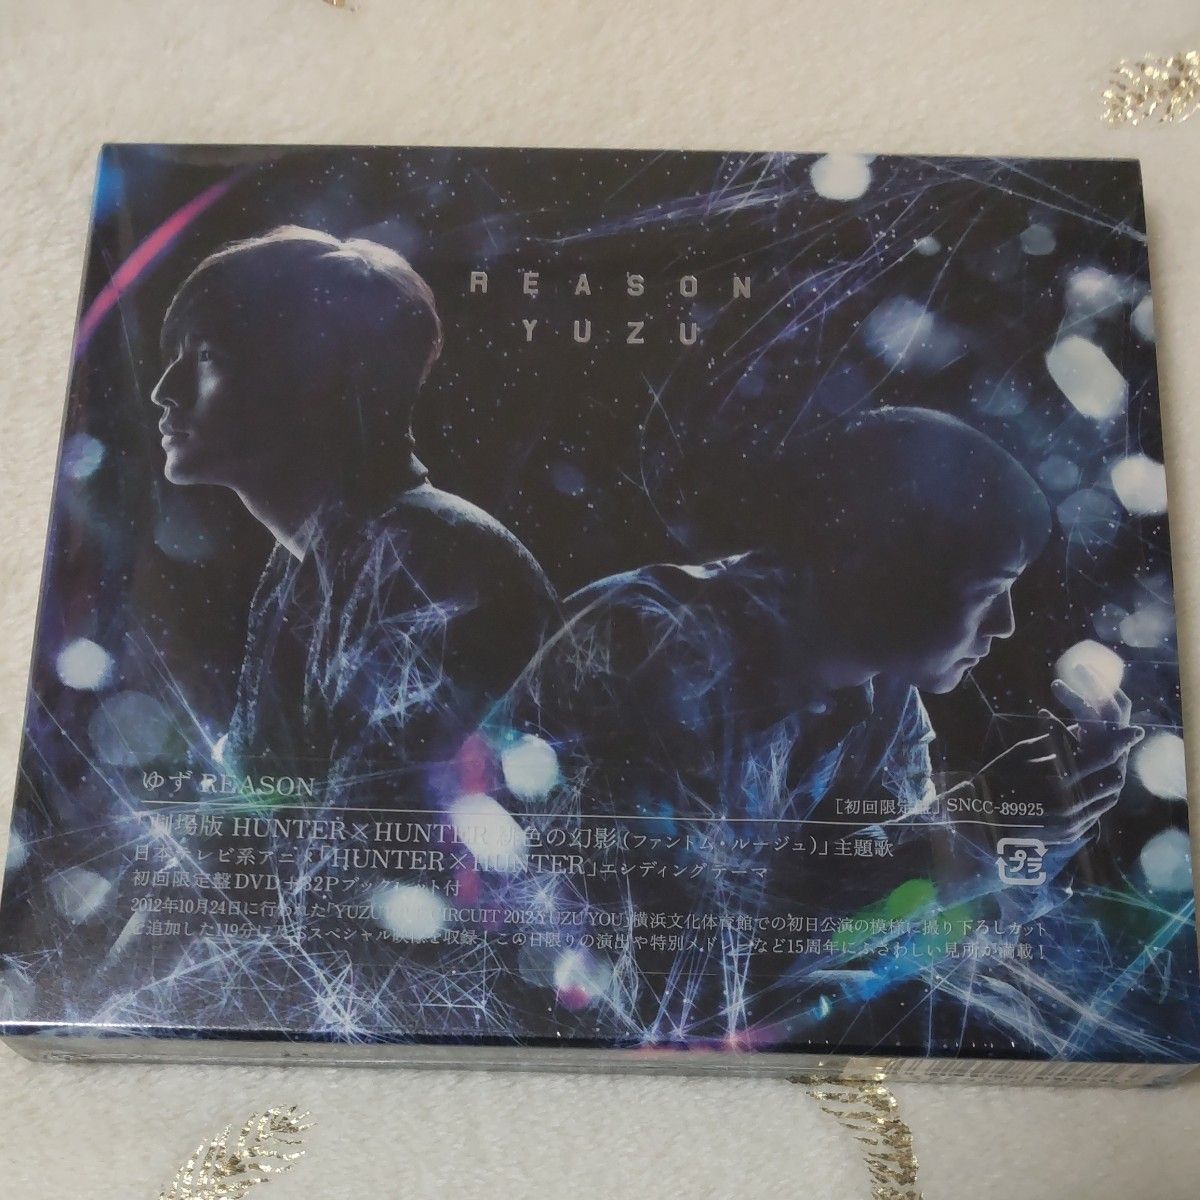 ゆず CD+DVD/REASON 初回限定盤 (ゆずVer.) 13/1/9発売 北川悠仁 岩沢厚治 YUZU HUNTER